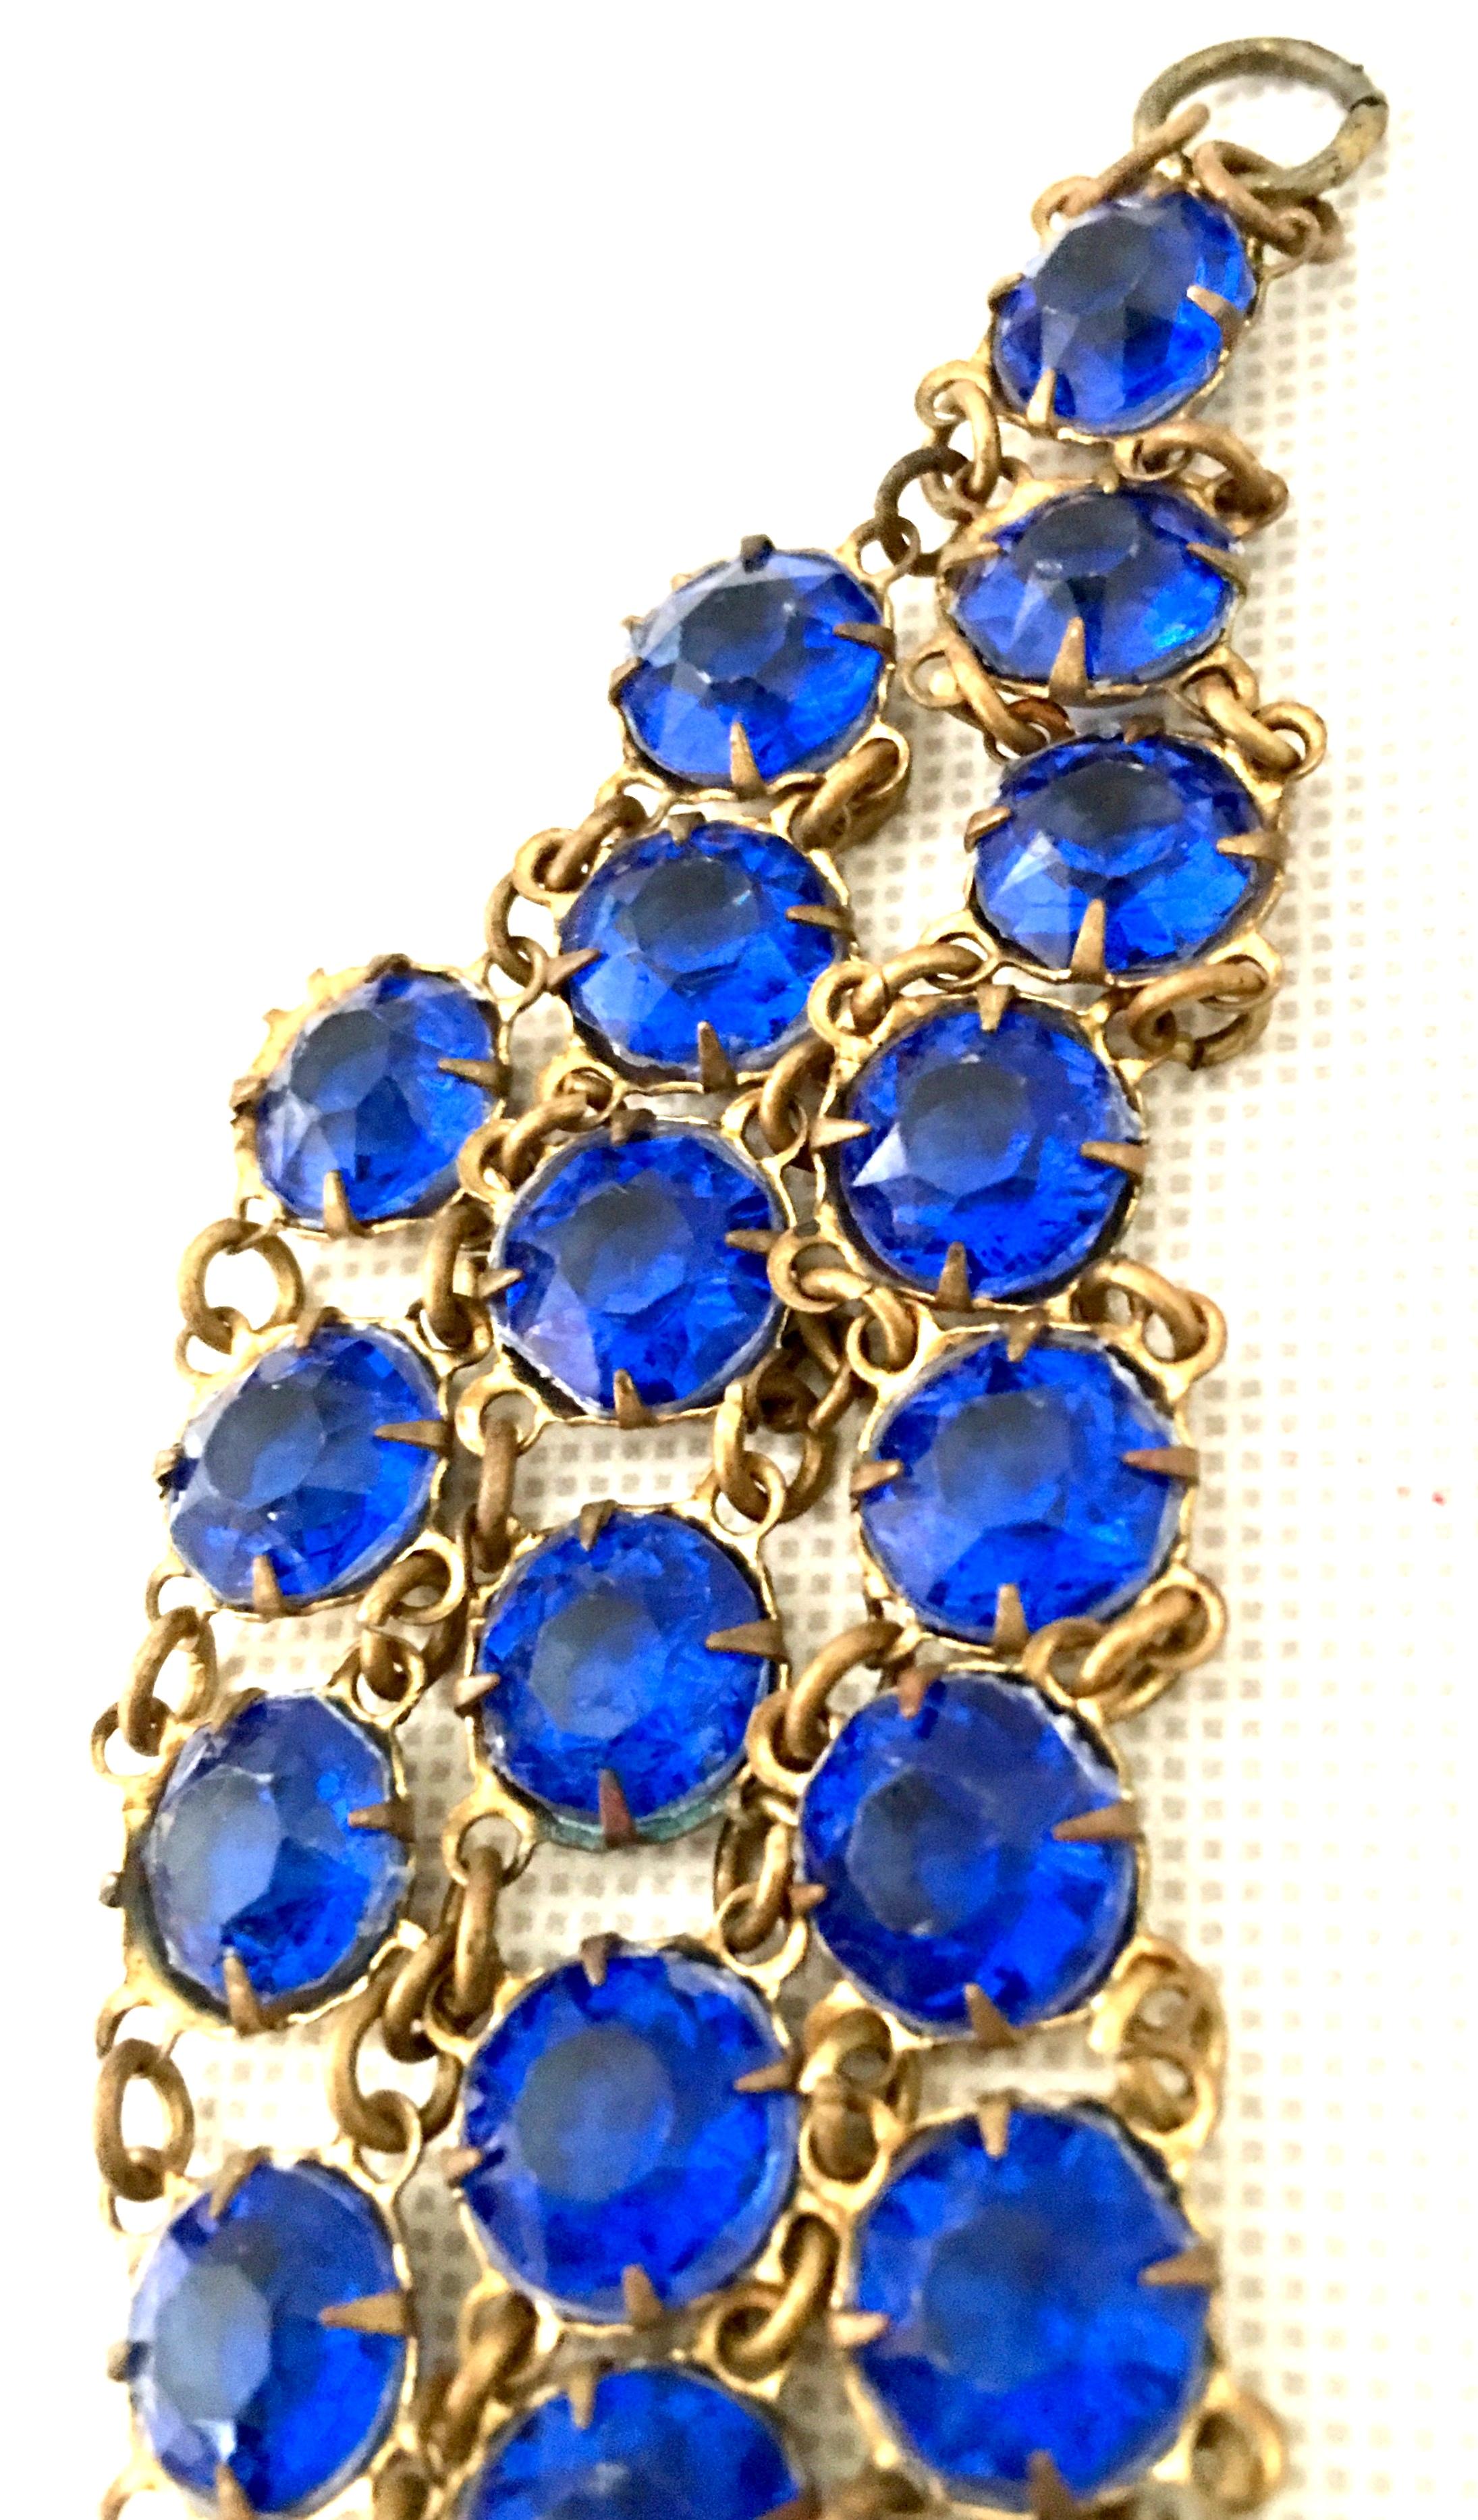 Antique Gilt Gold Sapphire Blue Faceted Glass Choker Necklace & Bracelet S/2 For Sale 4